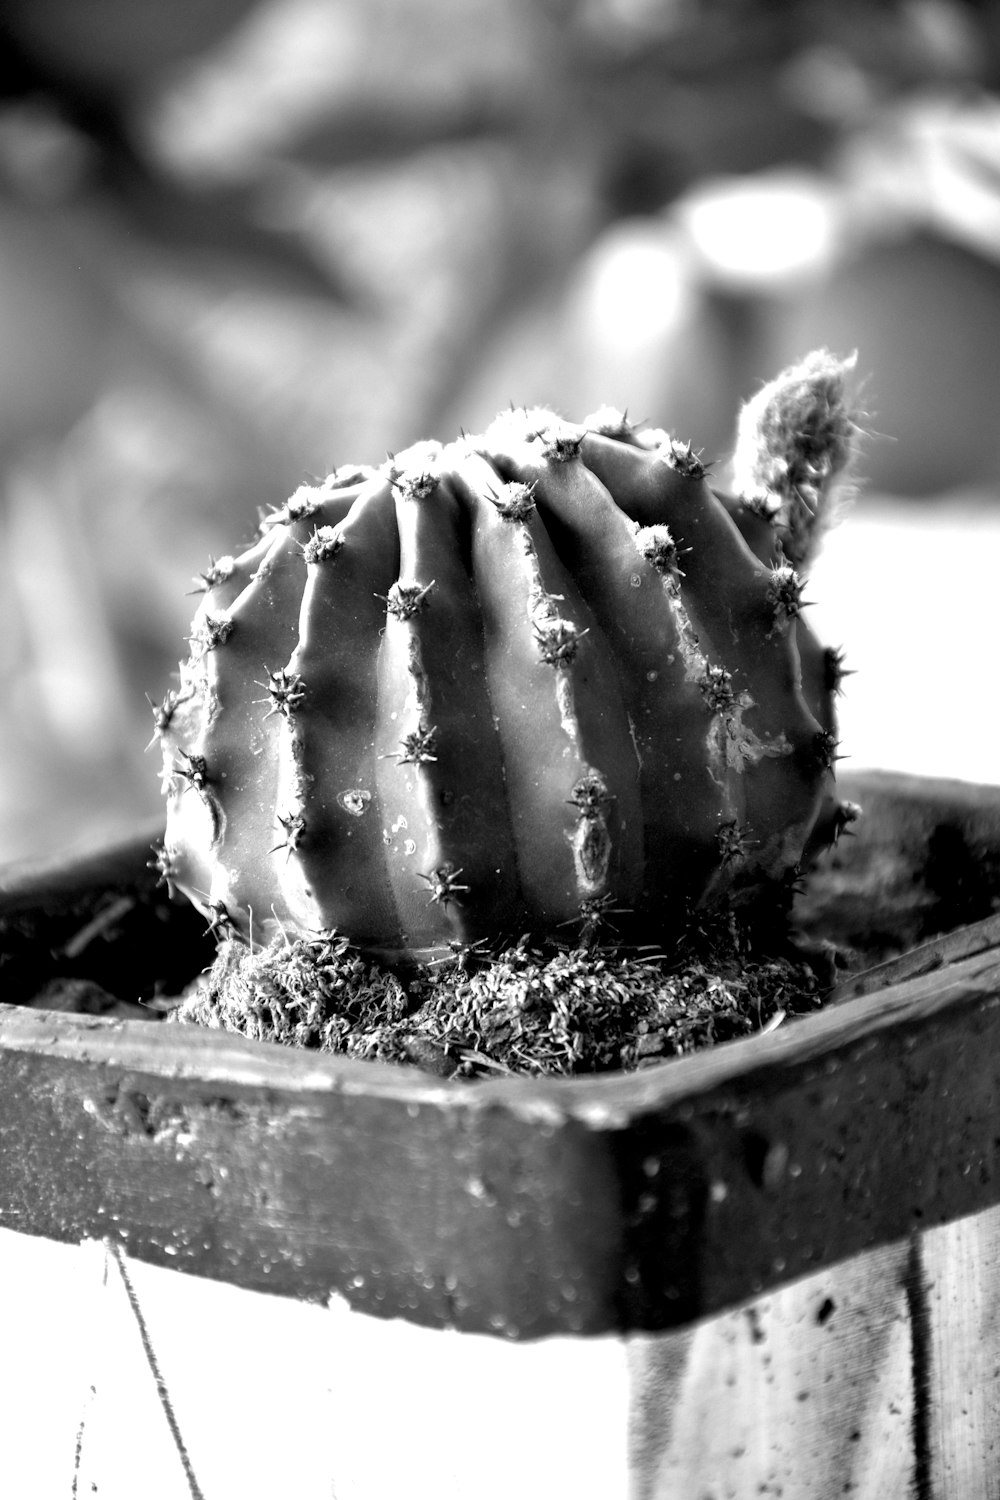 Una foto en blanco y negro de un cactus en una maceta